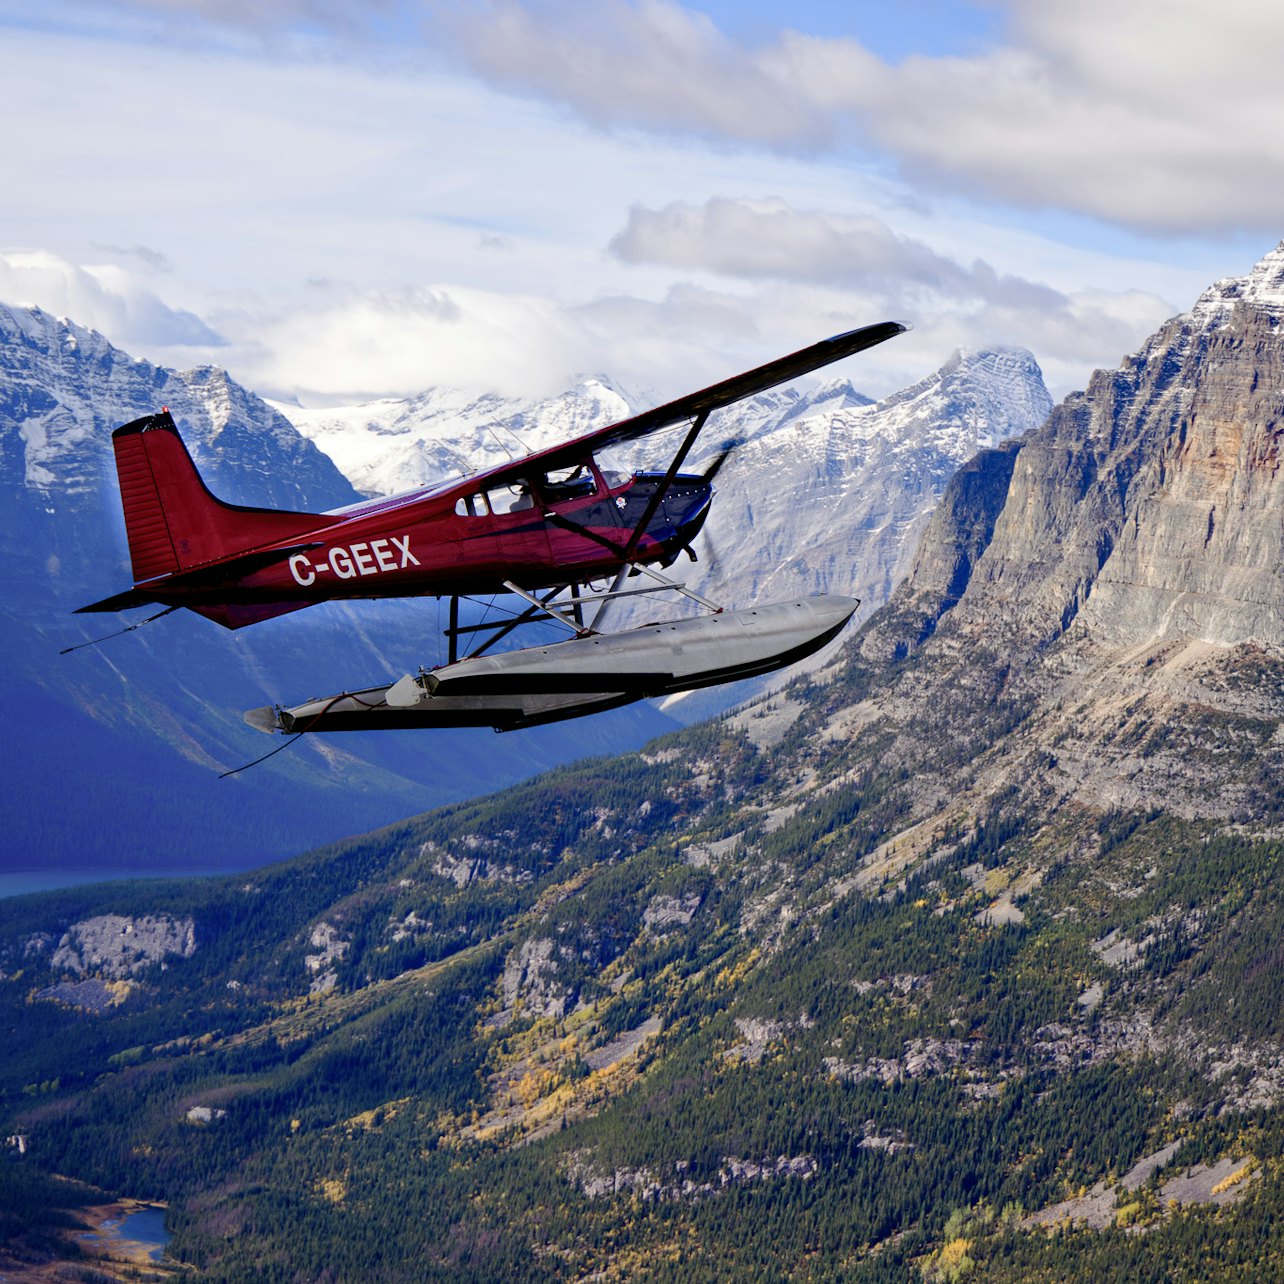 Viaje de experiencia inmersiva FlyOver Canada/Las Vegas - Alojamientos en Vancouver